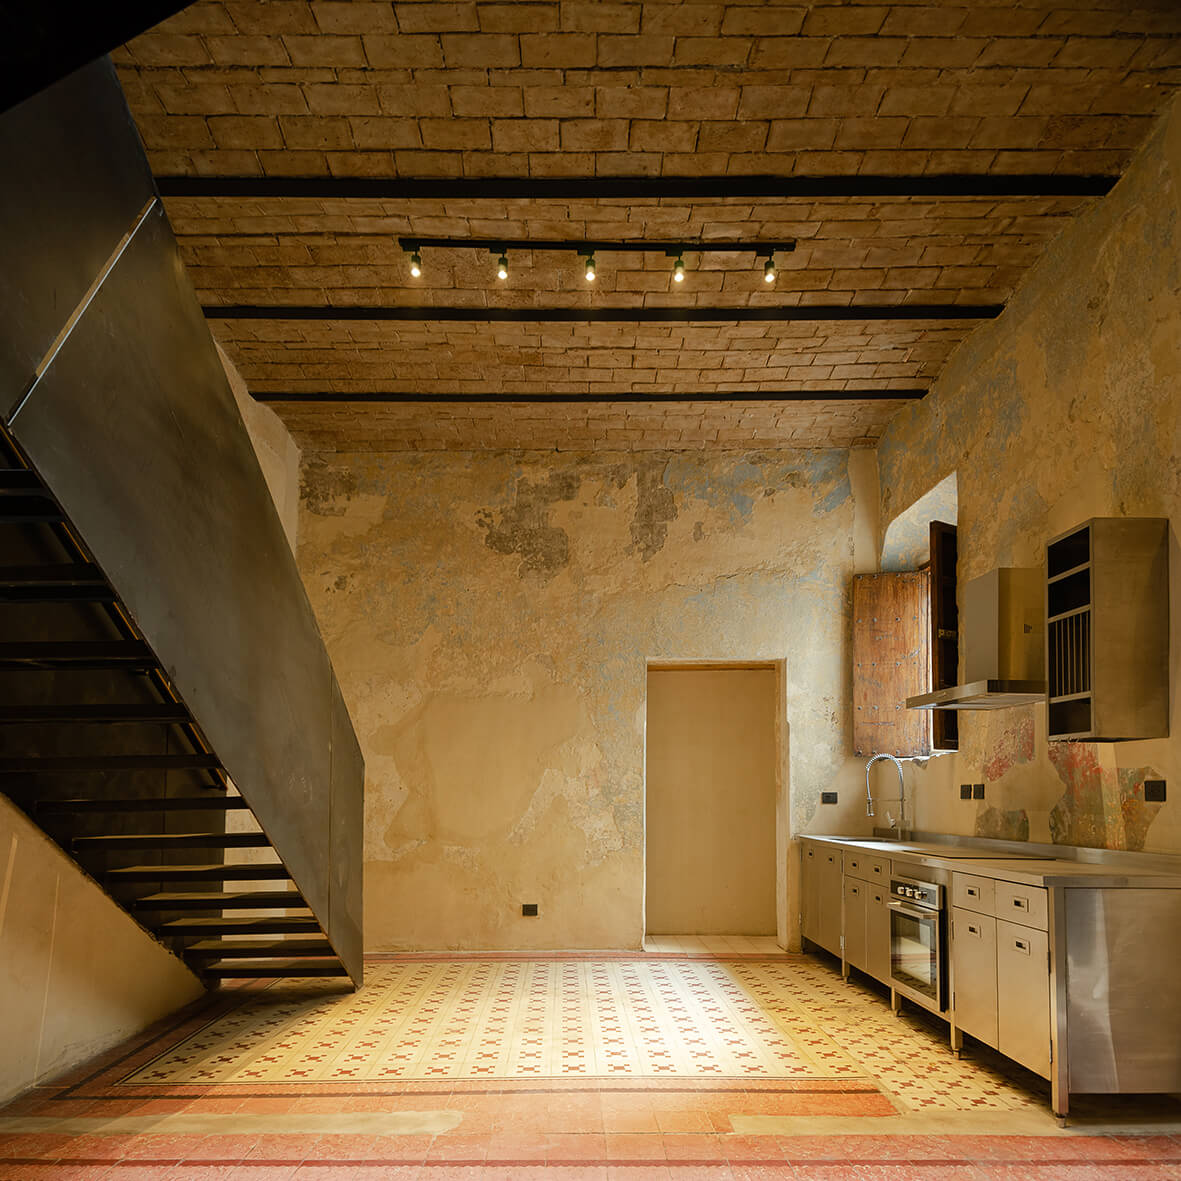 Fotografia del interior de una de las viviendas de los Pacheco, Se trata de un programa de vivienda multifamiliar alojado en un edificio histórico catalogado